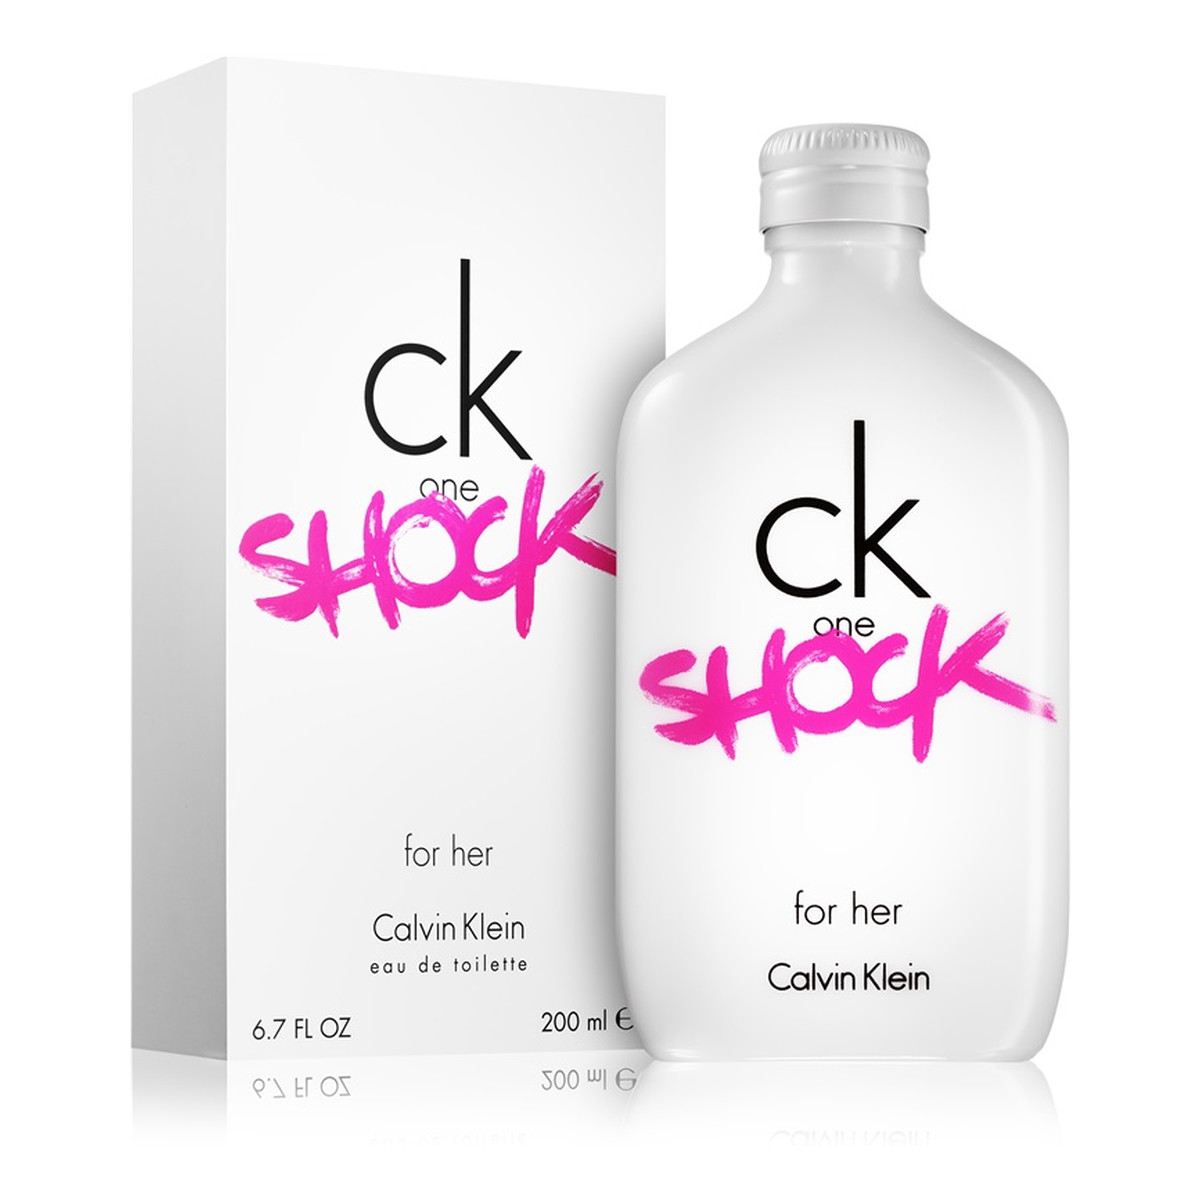 Calvin Klein CK One Shock for Her woda toaletowa dla kobiet 200ml